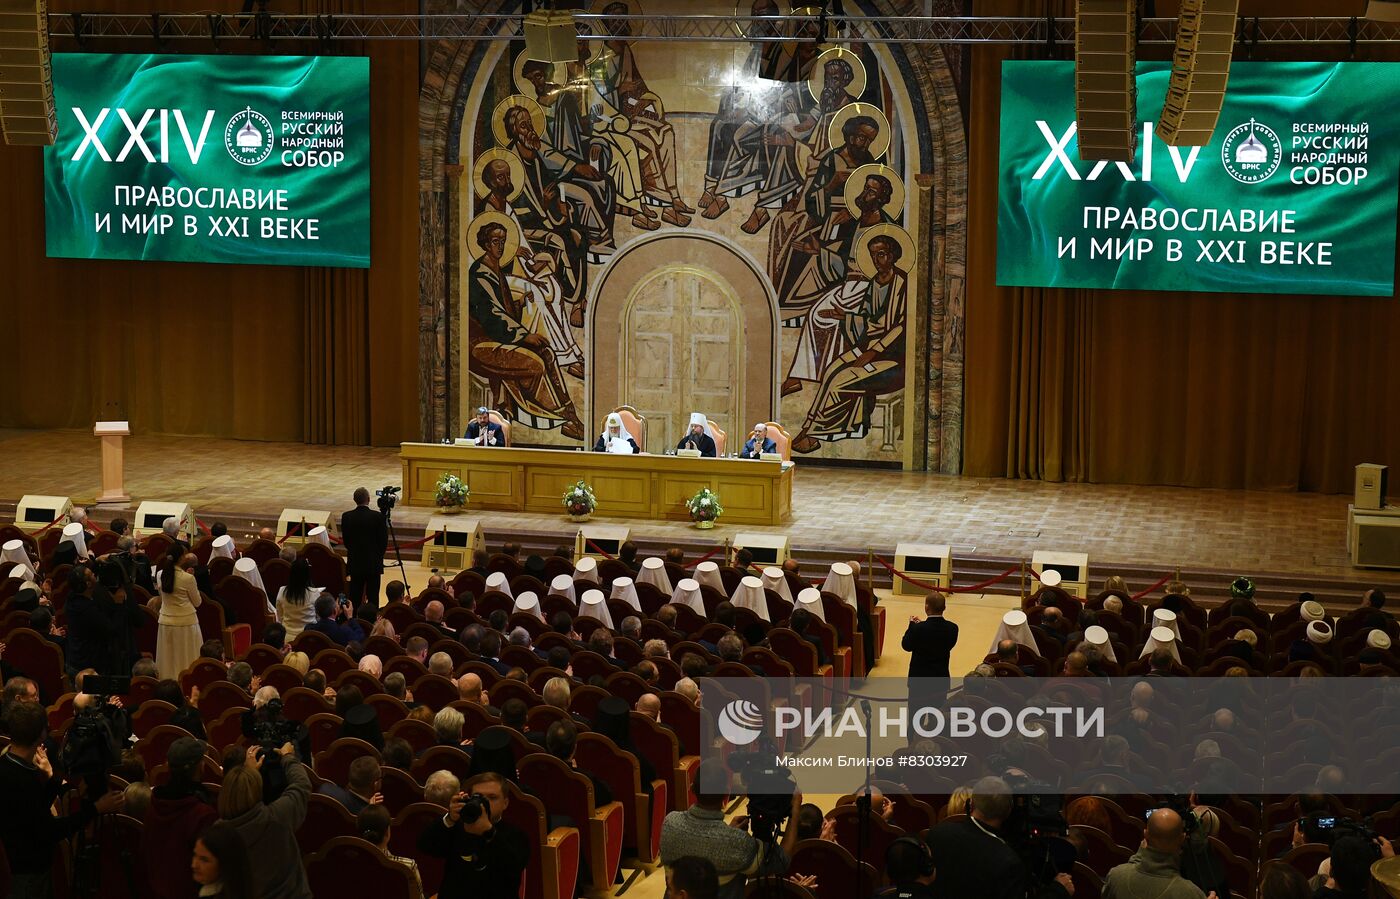 XXIV Всемирный русский народный собор в Москве